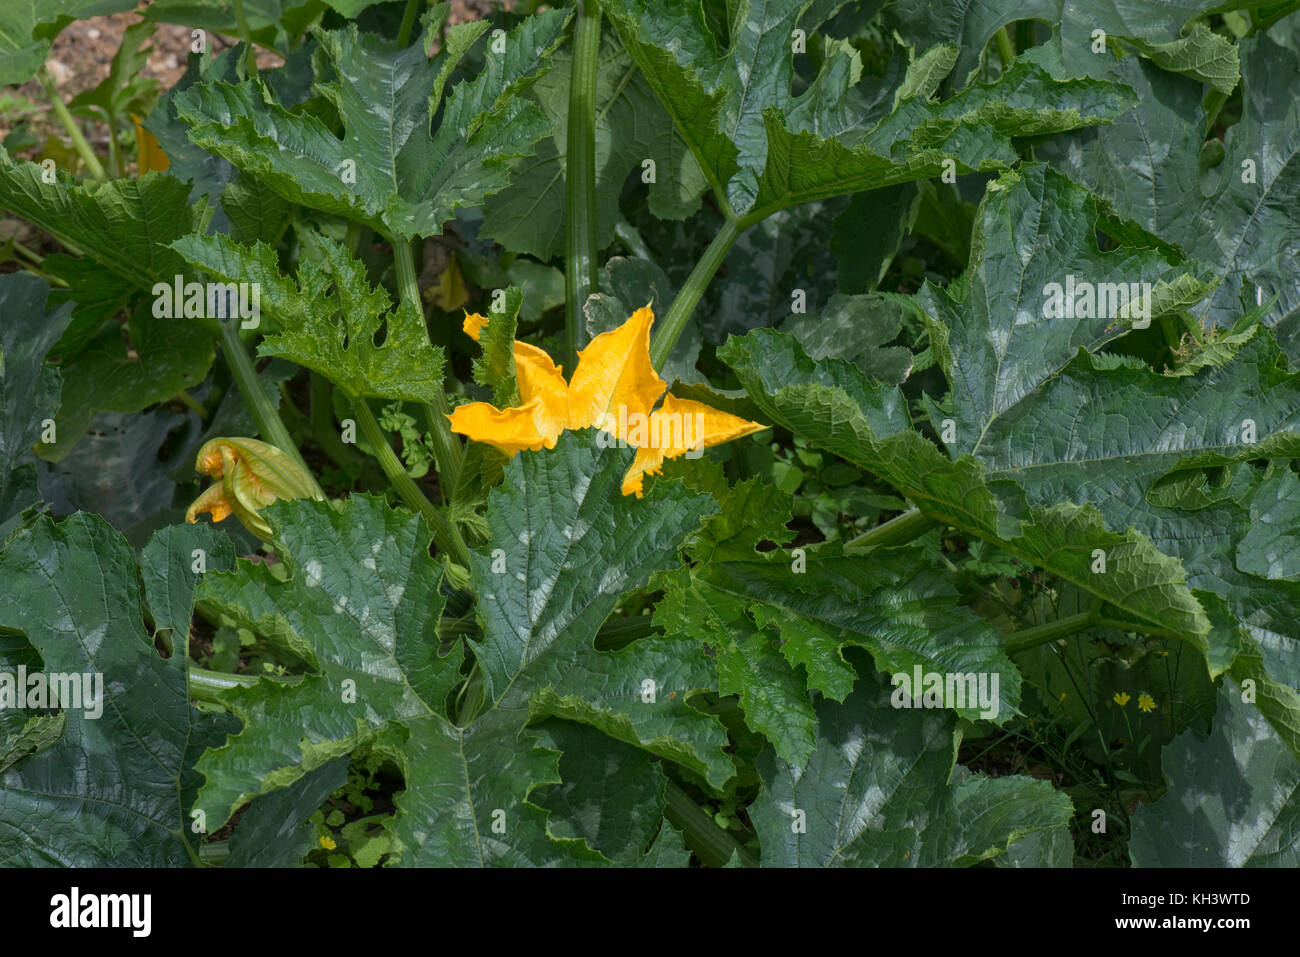 Gelbe männliche und weibliche Blüten auf einem Zucchini oder Zucchini Anlage mit junge Frucht Entwicklung unter Bold cucurbit Typ dunkelgrüne Blätter Stockfoto